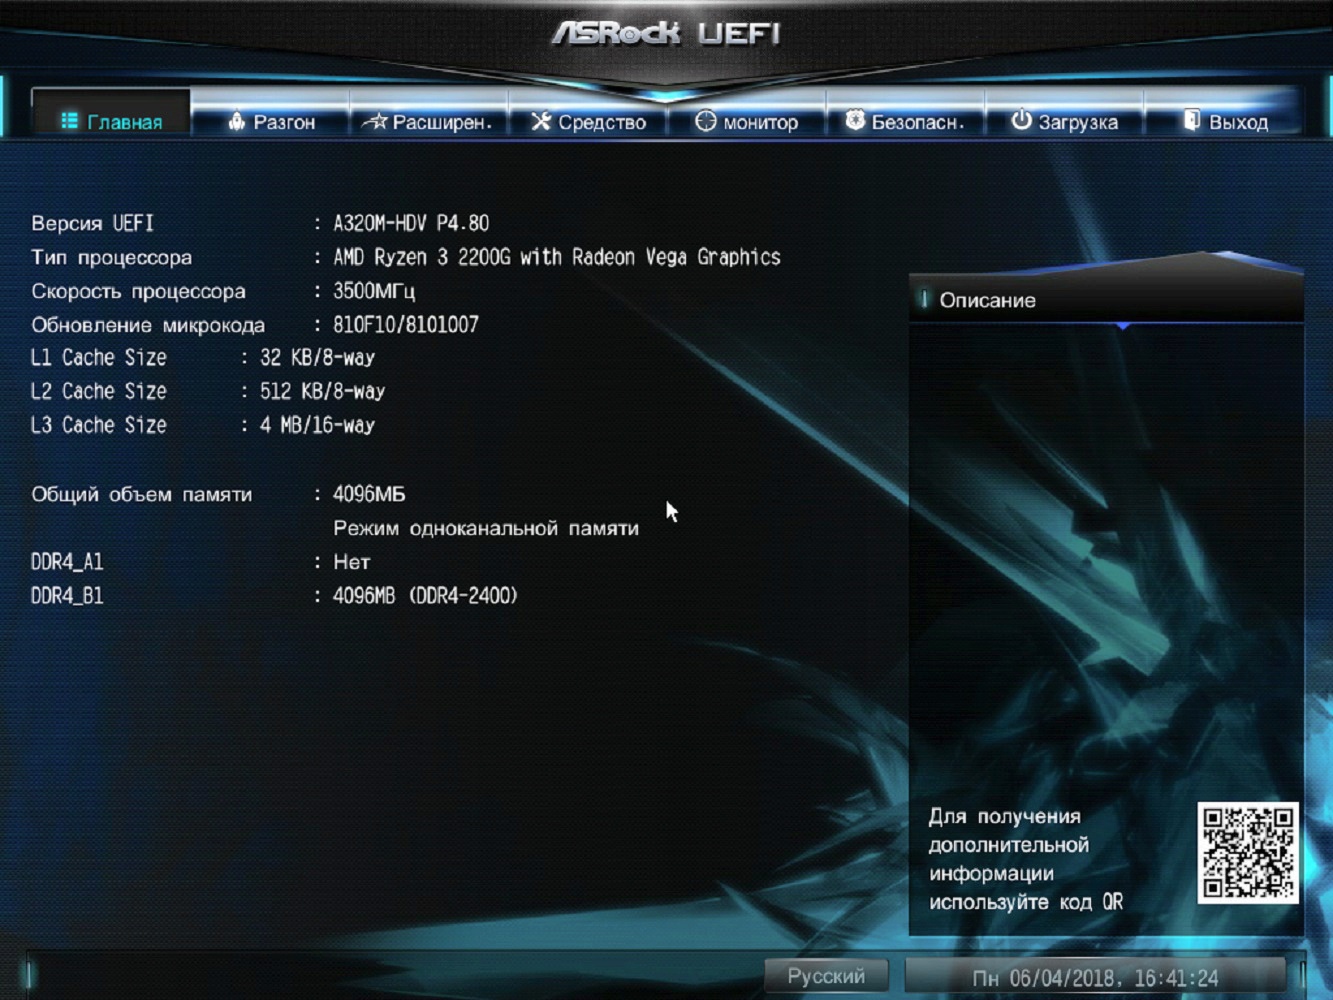 Биос 4g. Legacy на UEFI ASROCK. ASROCK UEFI BIOS. ASROCK e3v5 WS. Биос ASROCK a320m-Hdv.